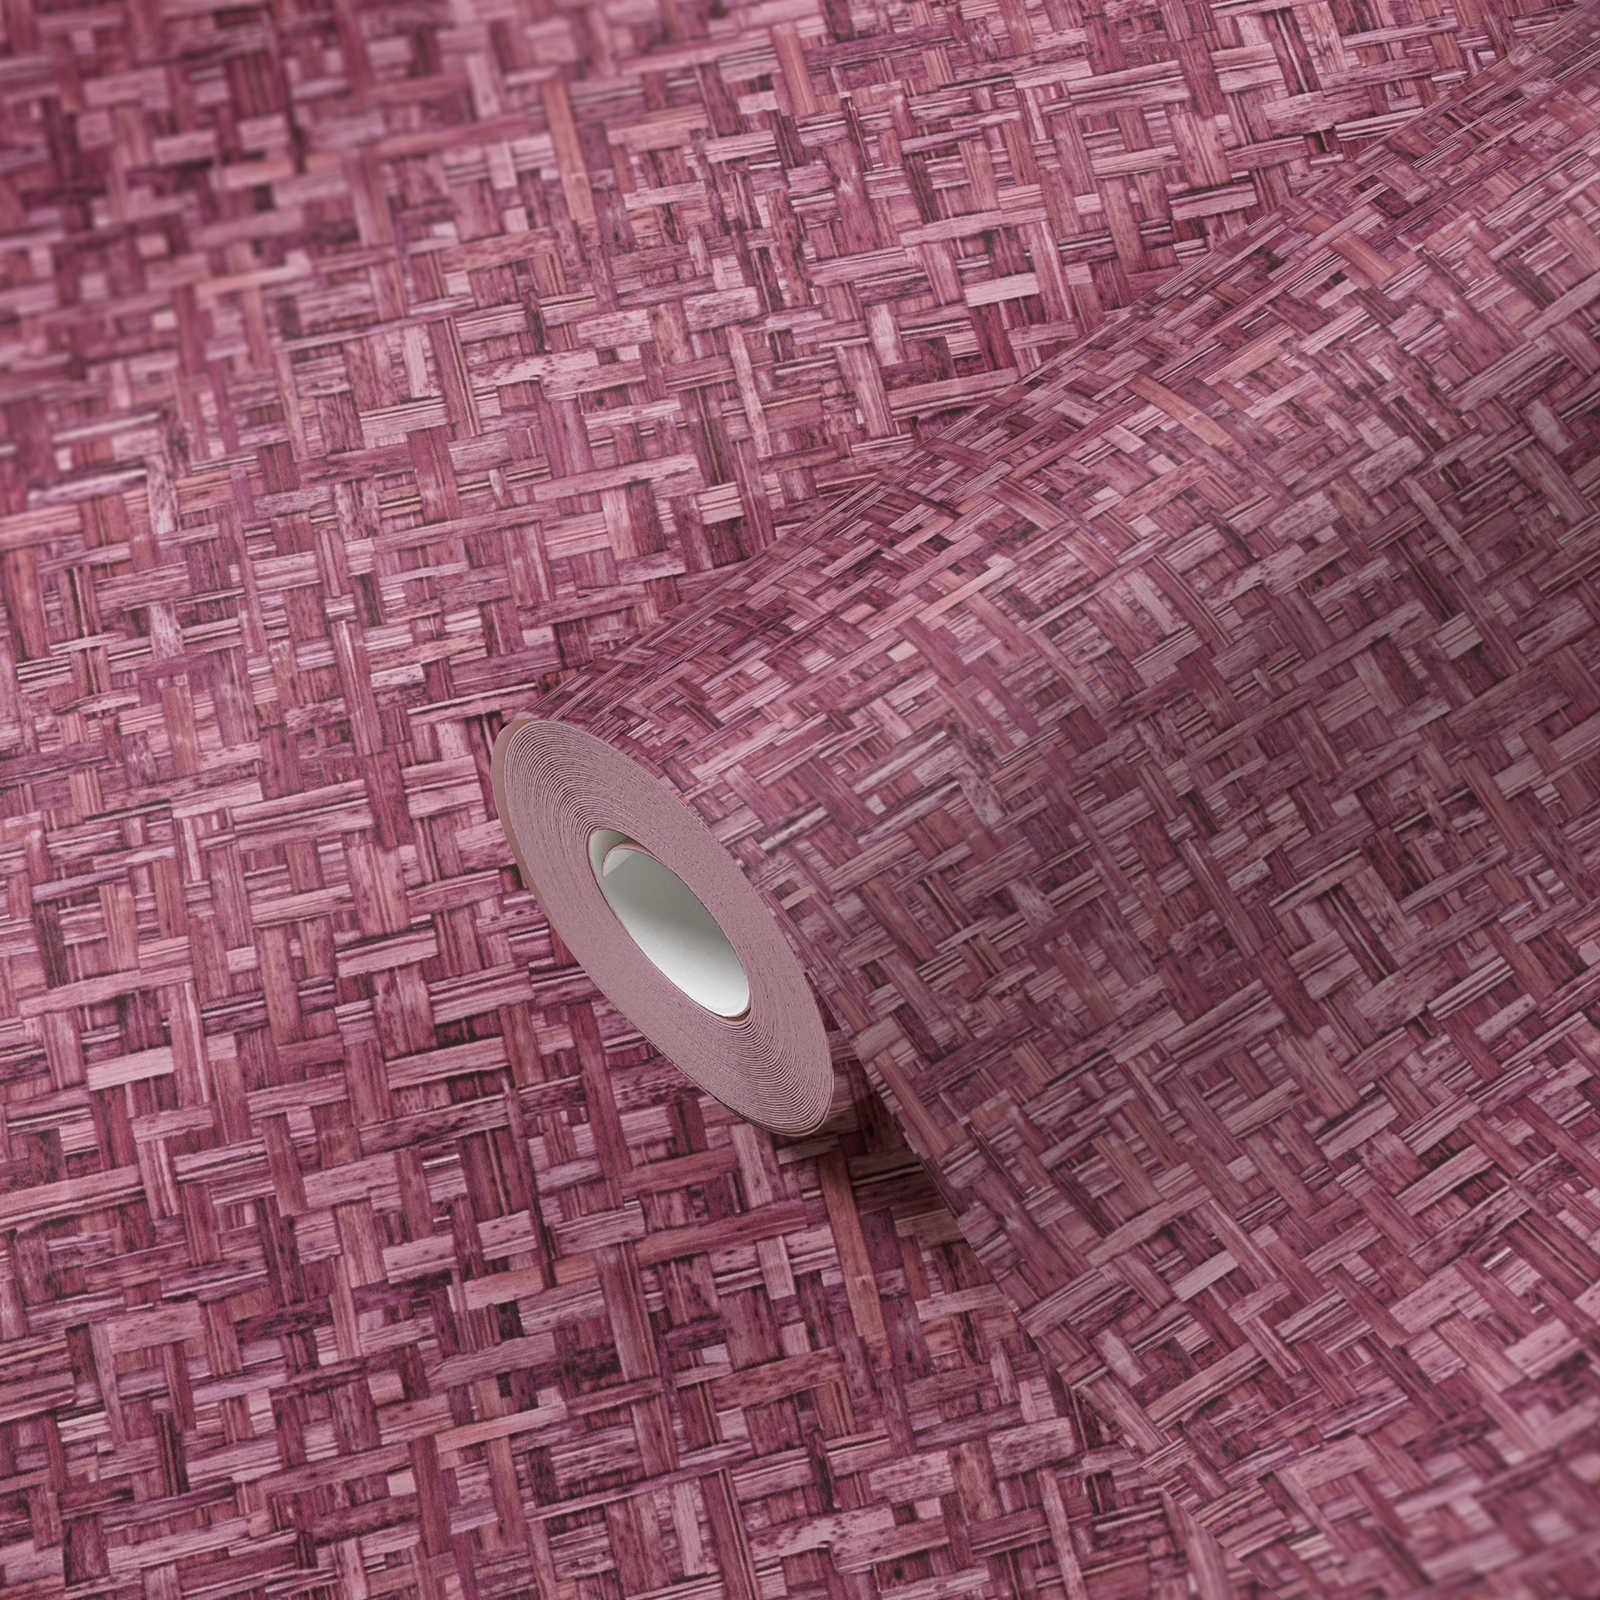             Vliesbehang paars met gevlochten patroon & structuur design - roze, rood
        